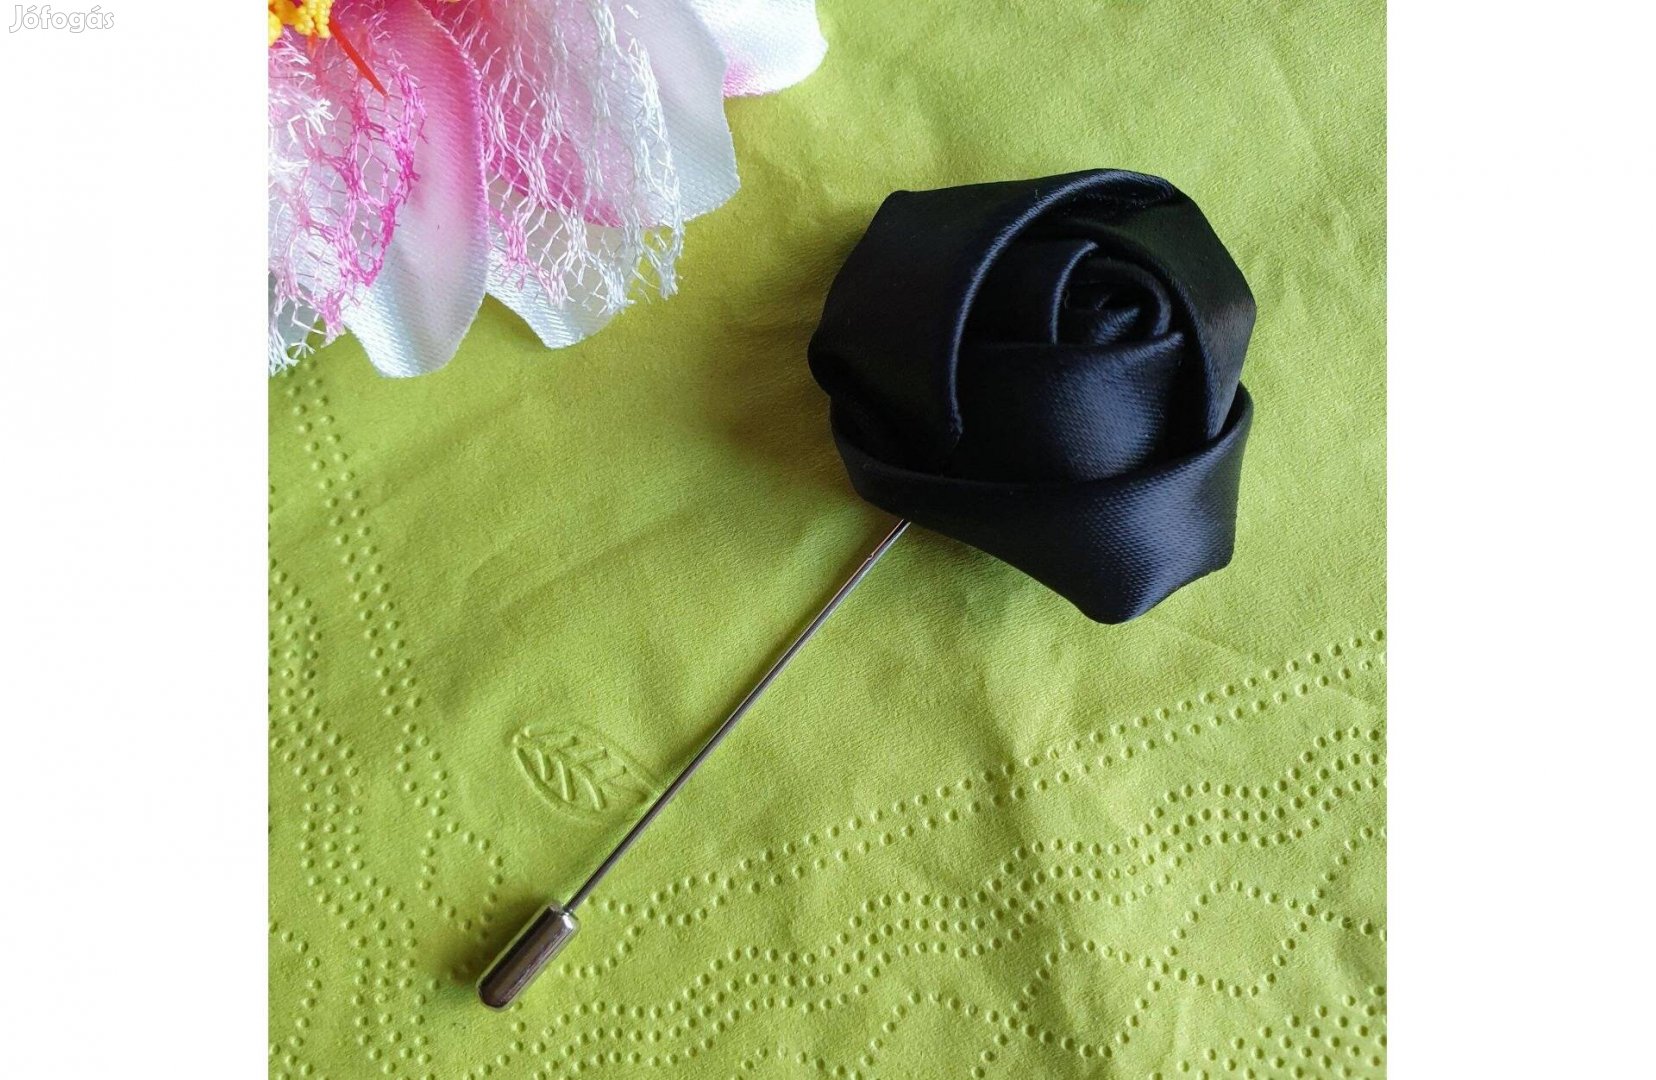 Hajtókatű, kitűző HAT21 - 40mm-es fekete szatén rózsával